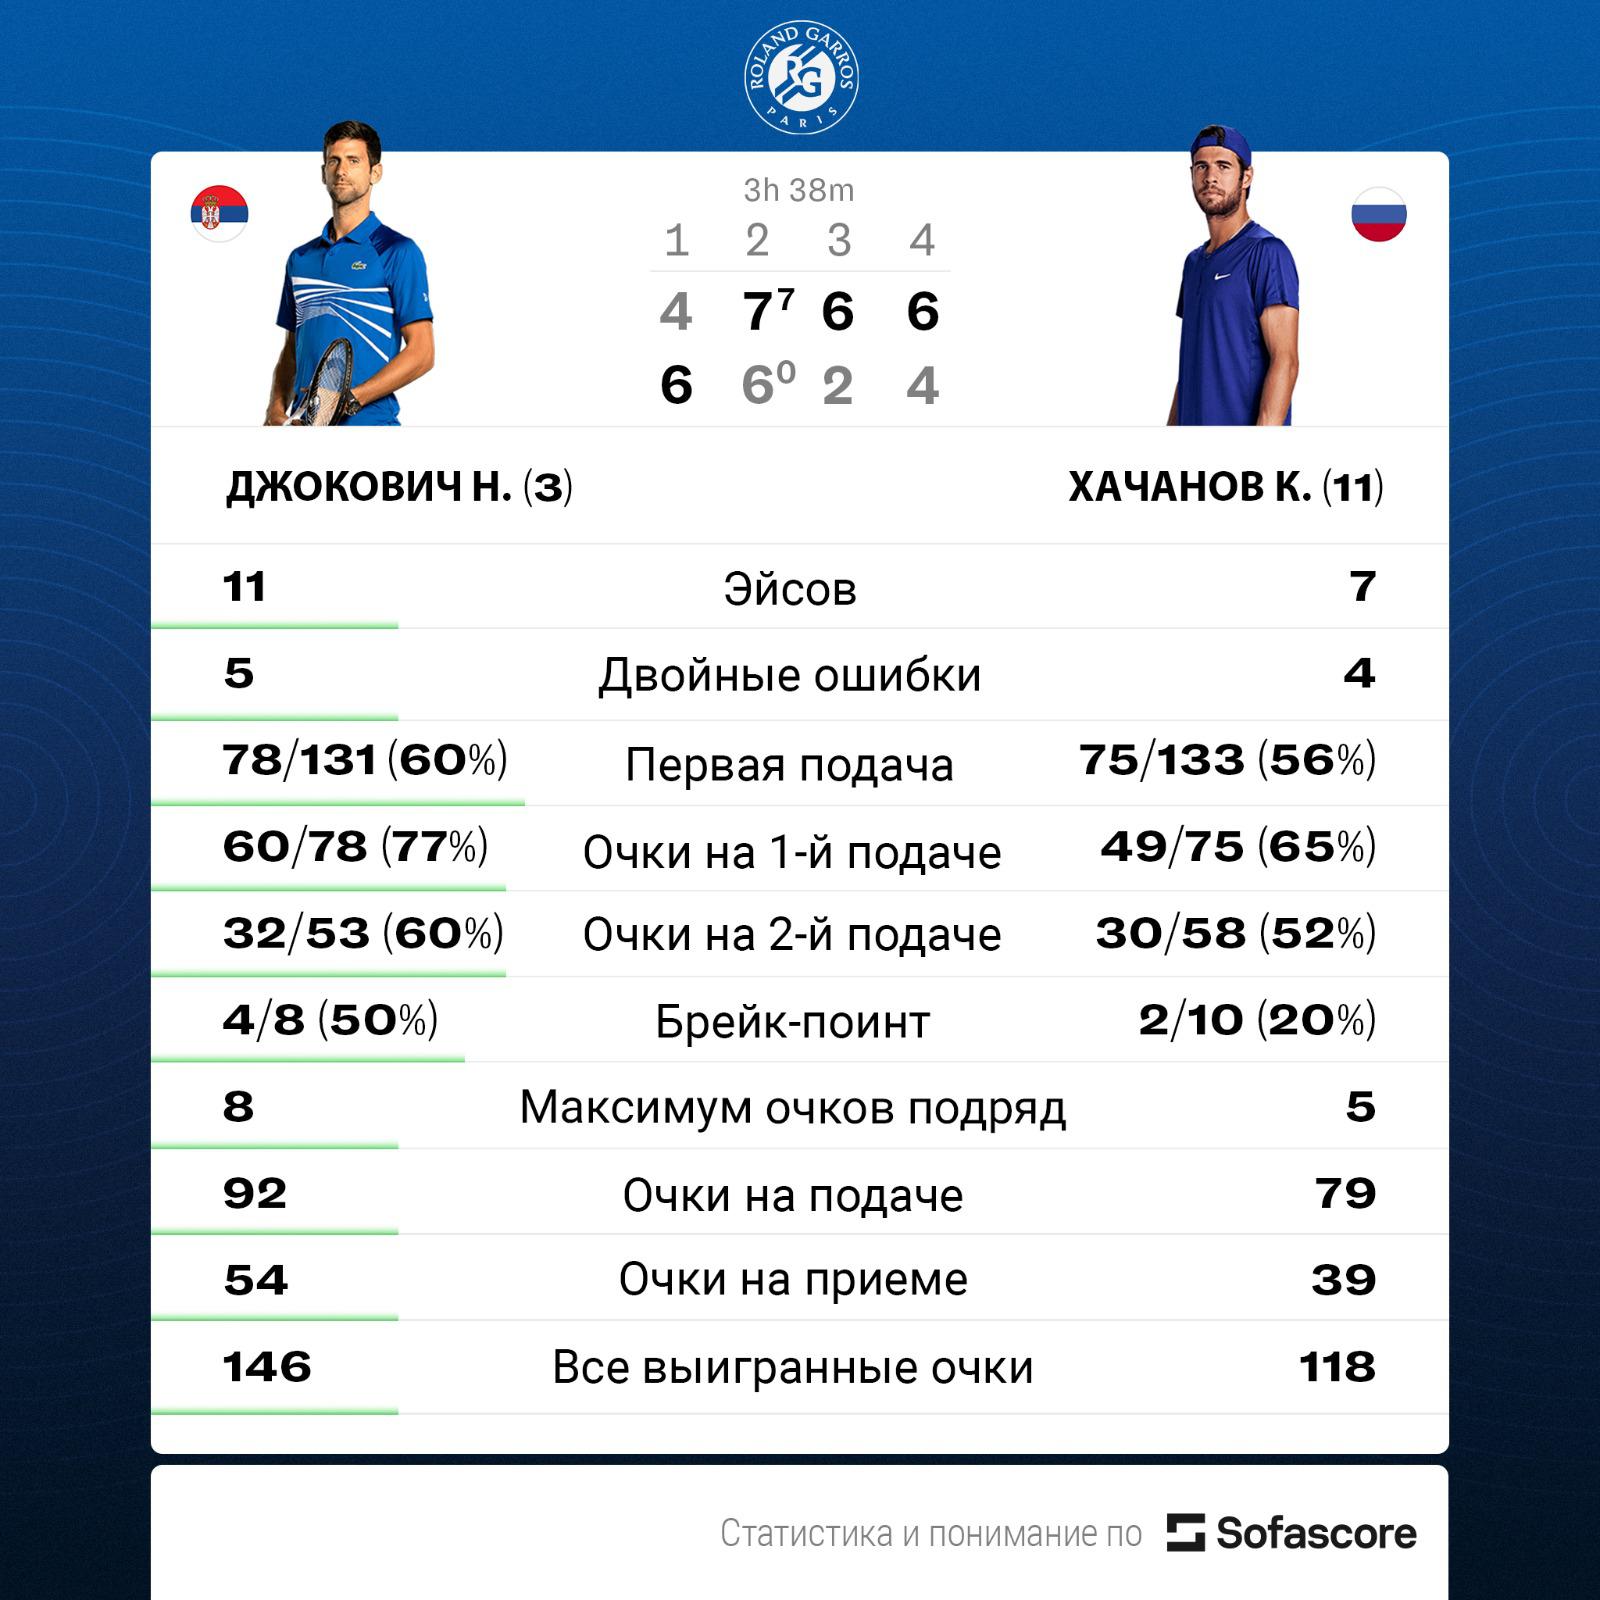 Хачанов проиграл Джоковичу в четвертьфинале «Ролан Гаррос»